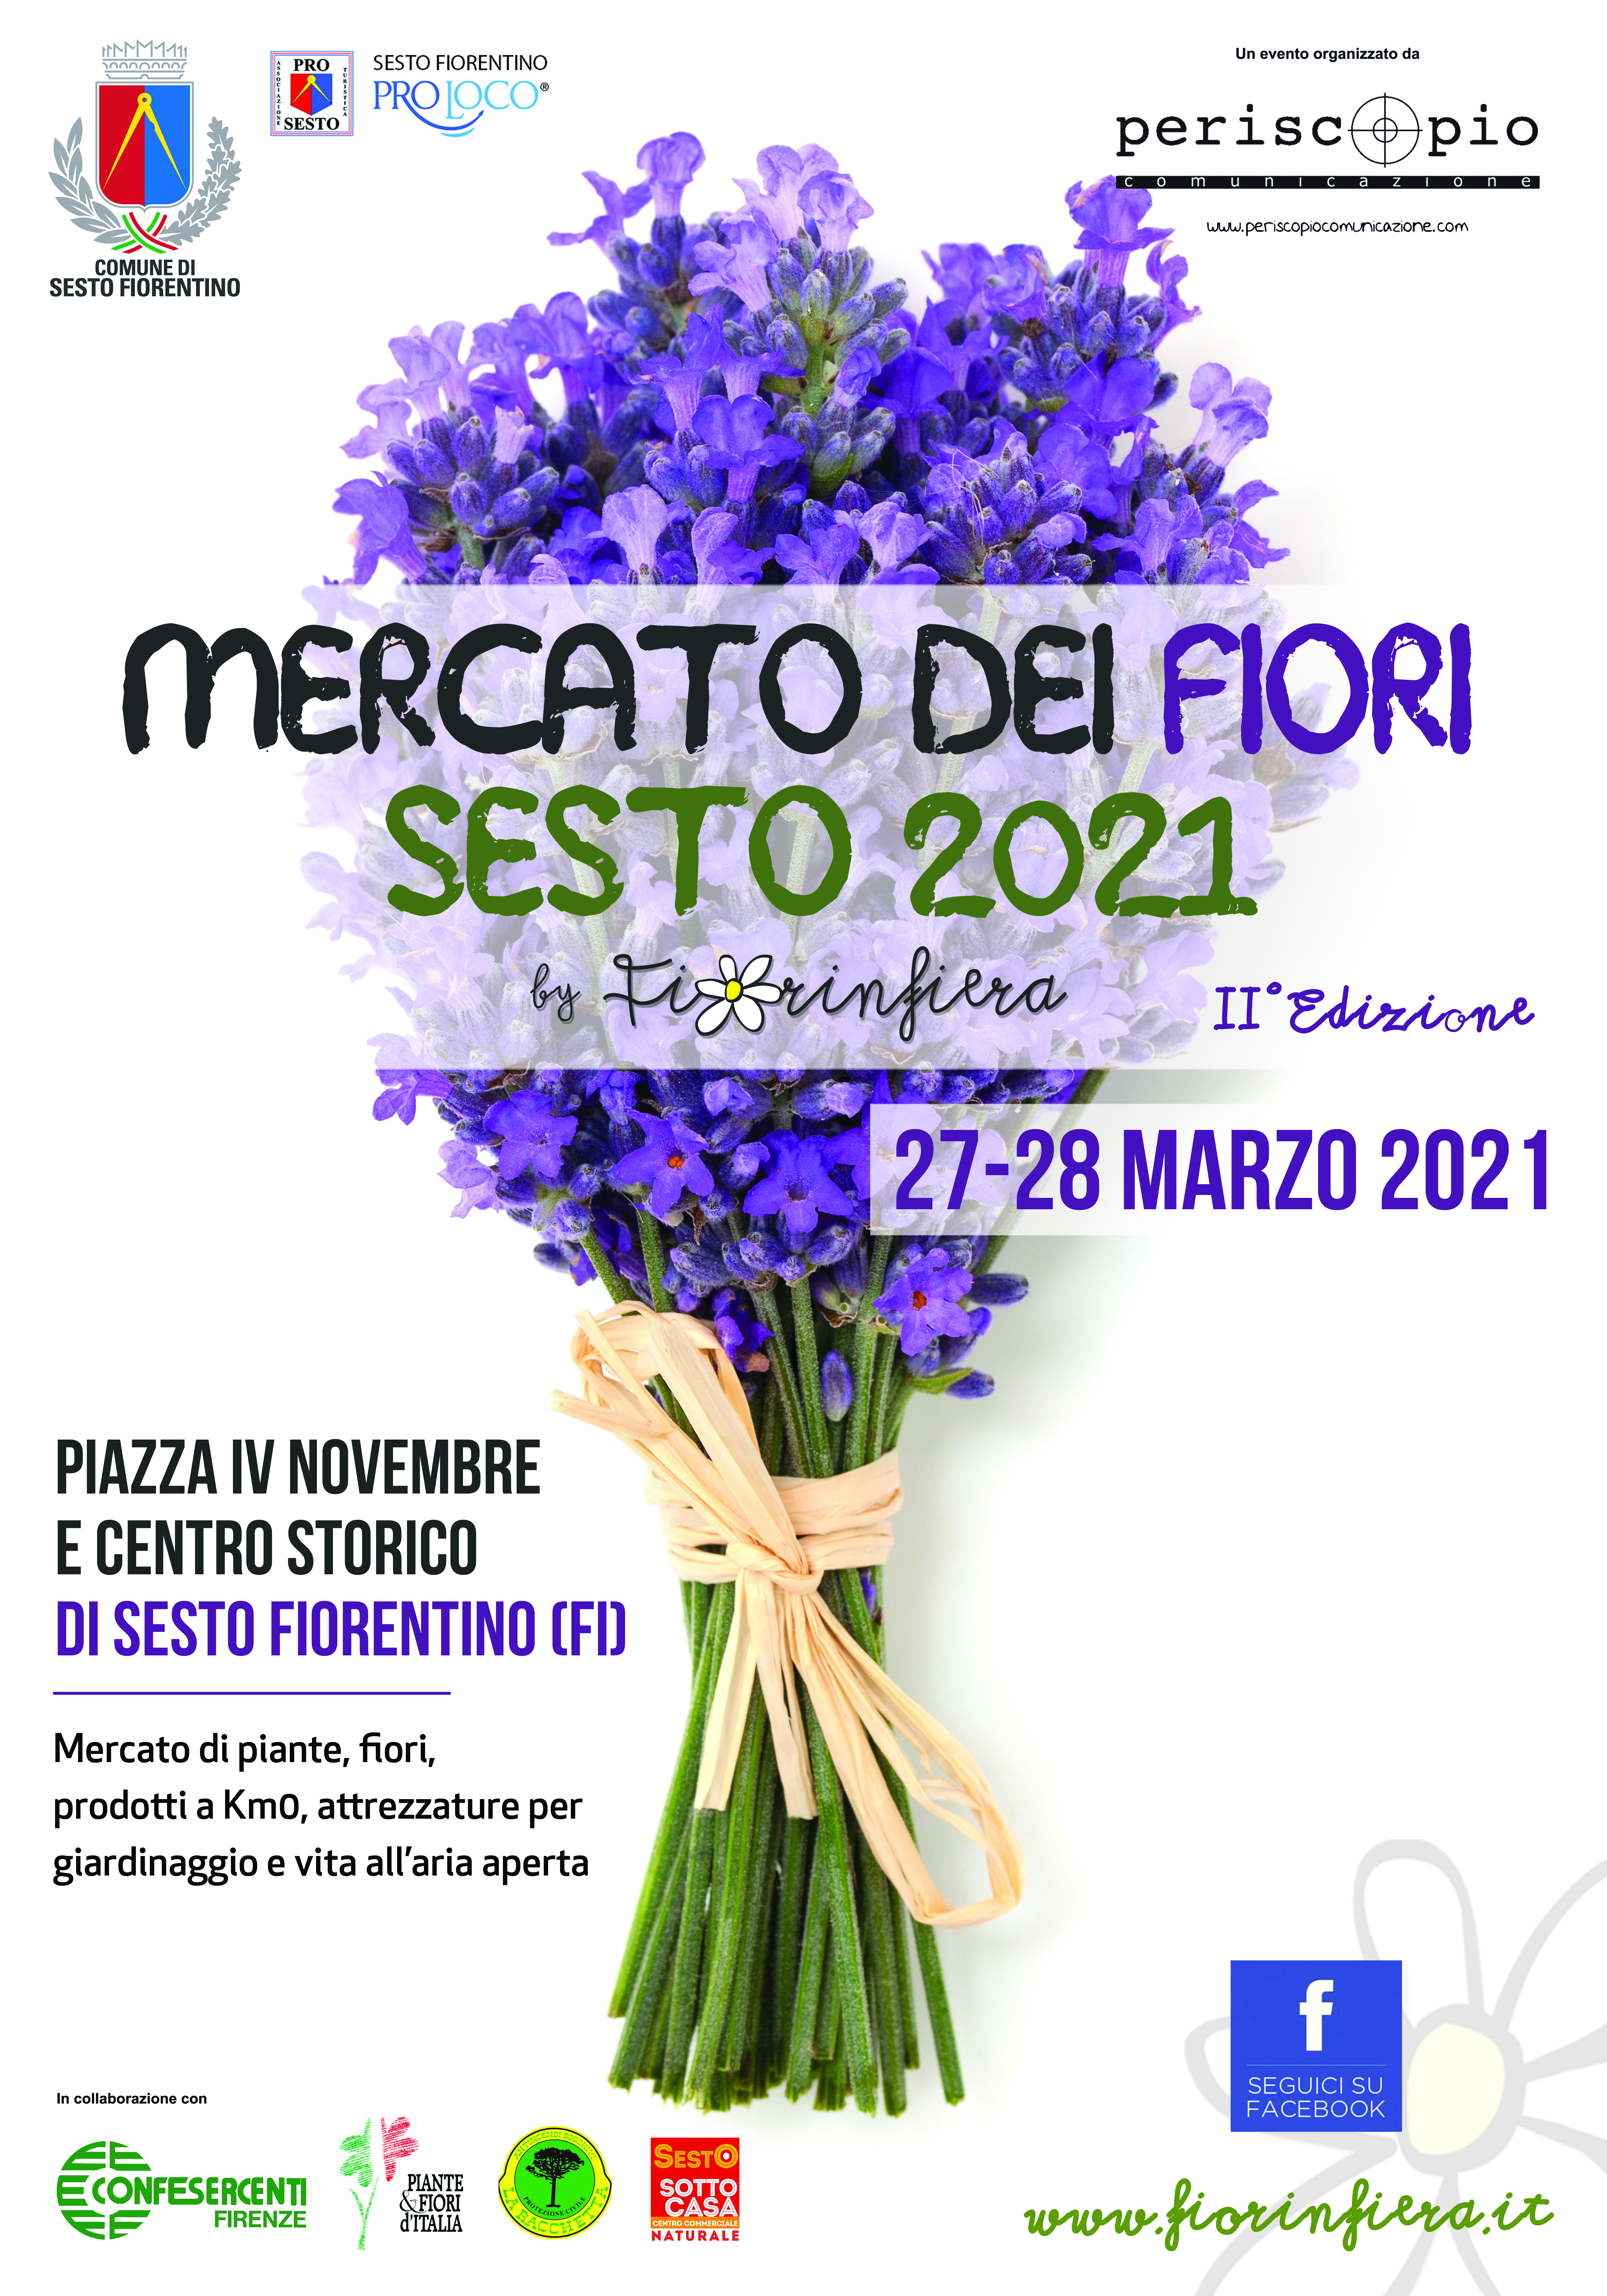 La primavera invade Sesto Fiorentino il 27 e 28 Marzo